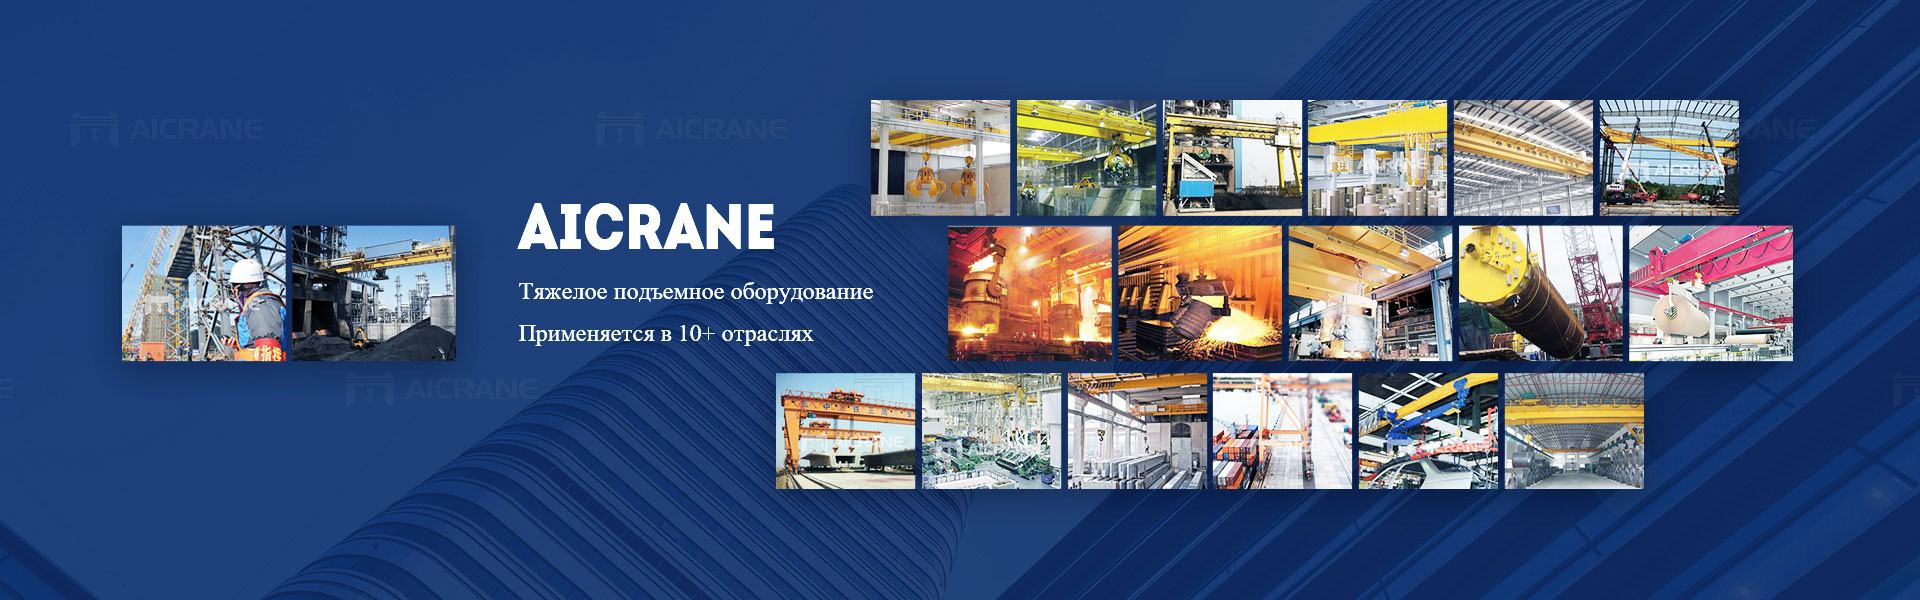 Aicrane подъемное оборудование используется для перемещения тяжелых материалов